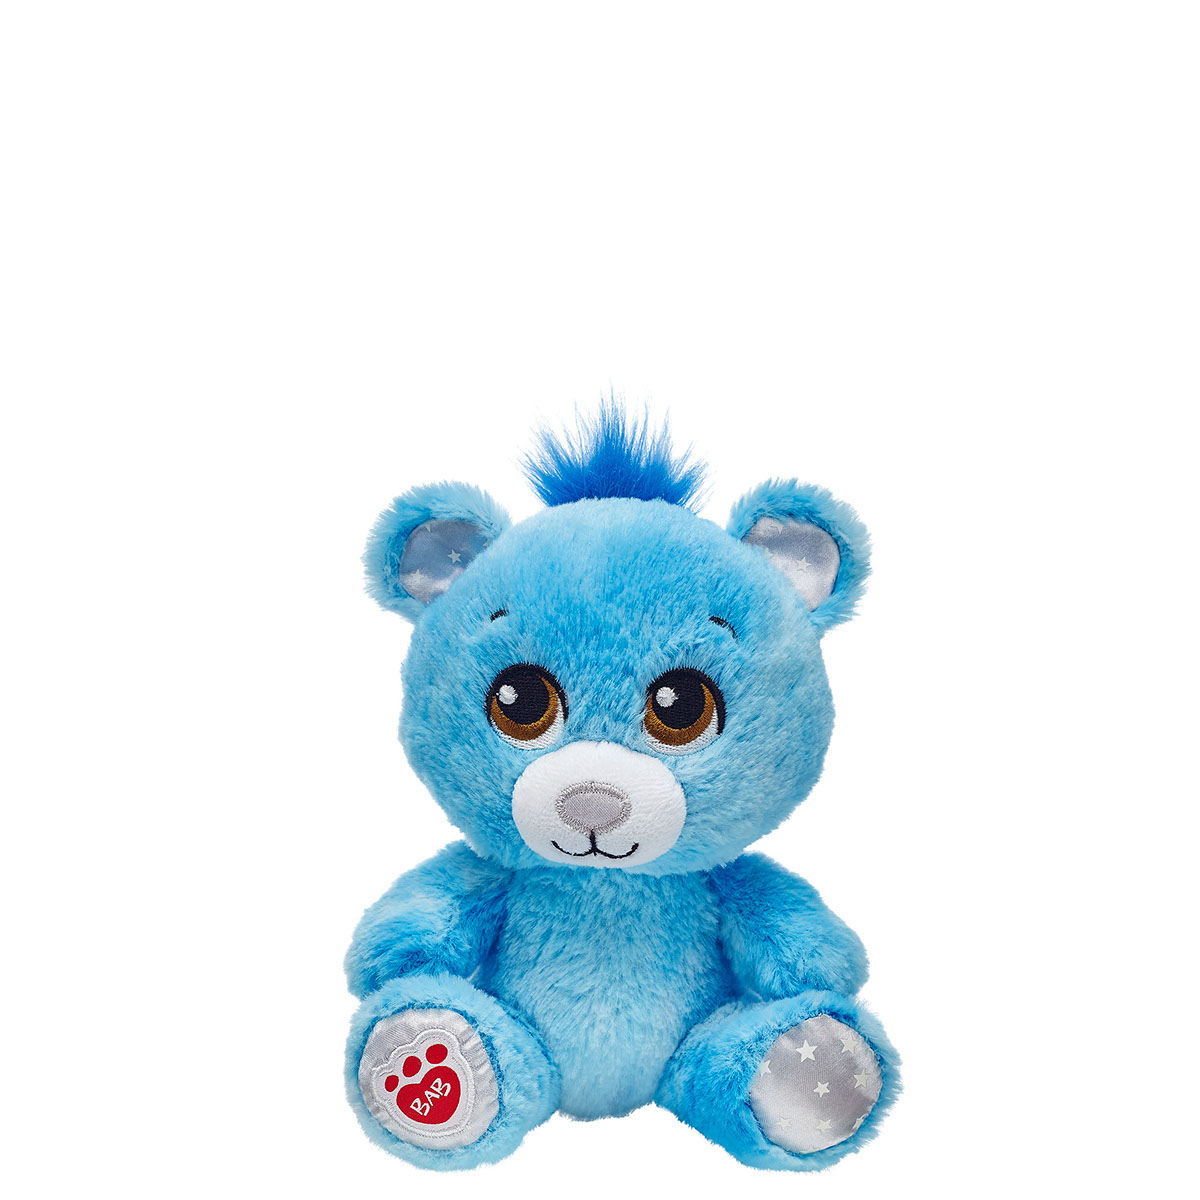 build-a-bear toy plush stuffed animal rainbow teddy bear